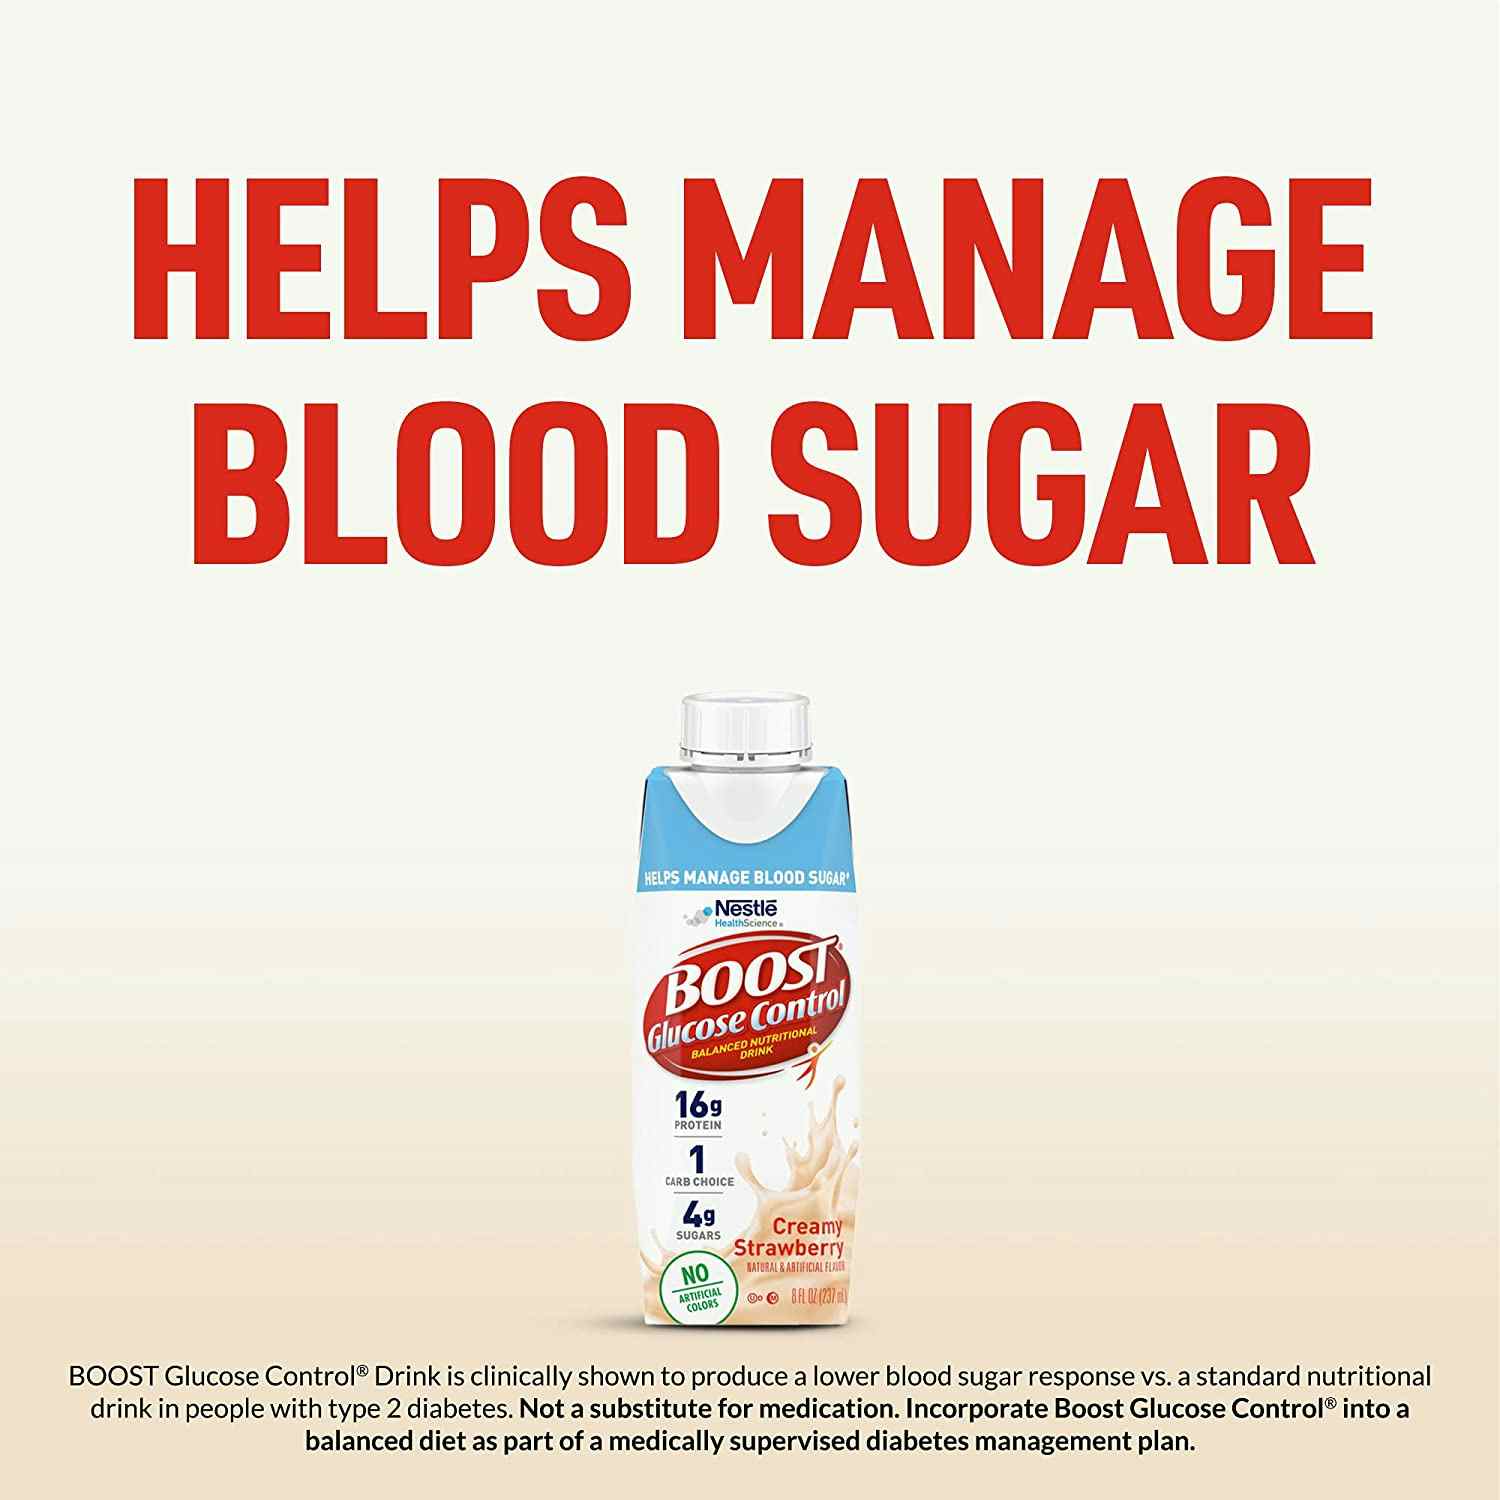 Boost Glucose Control Balanced Nutritional Drink, 8 oz., Carton, Creamy Strawberry